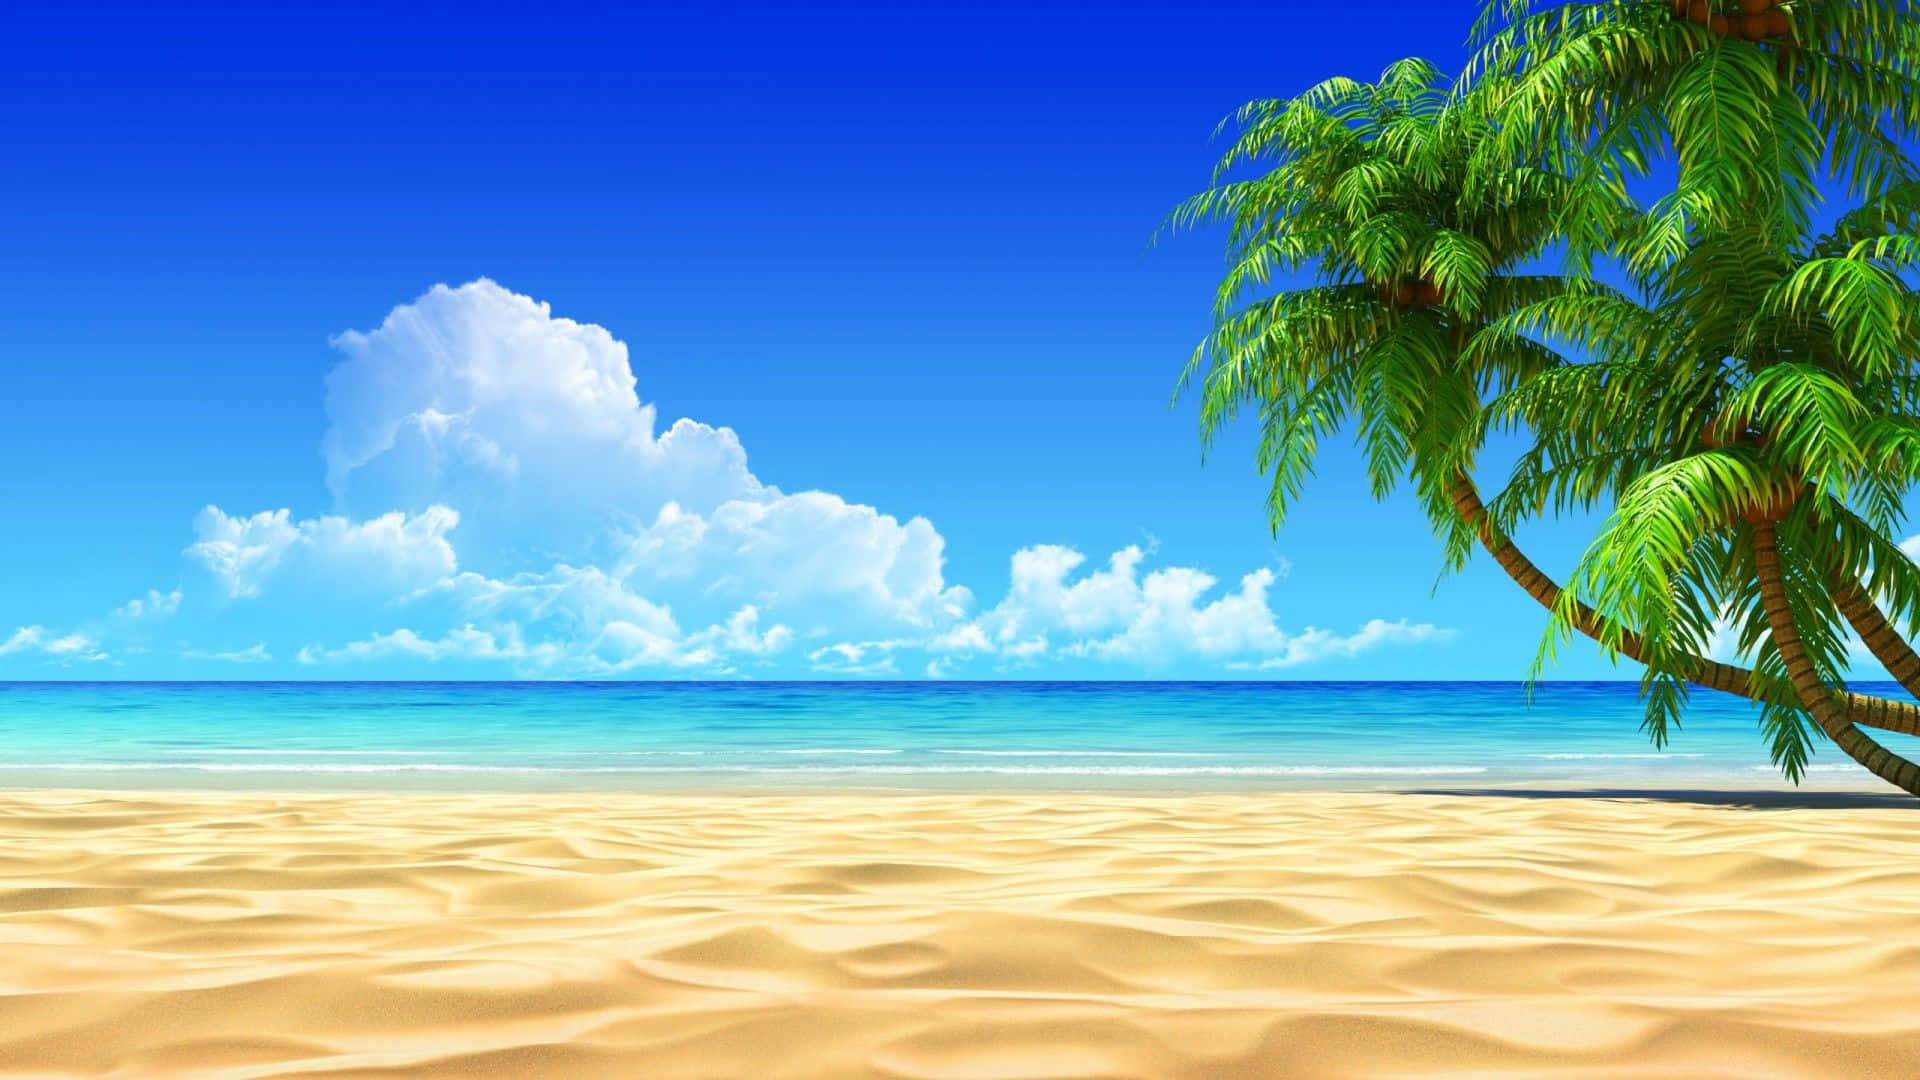 Rilassatisul Mare In Questa Spiaggia Di Sabbia Bianca Incontaminata.